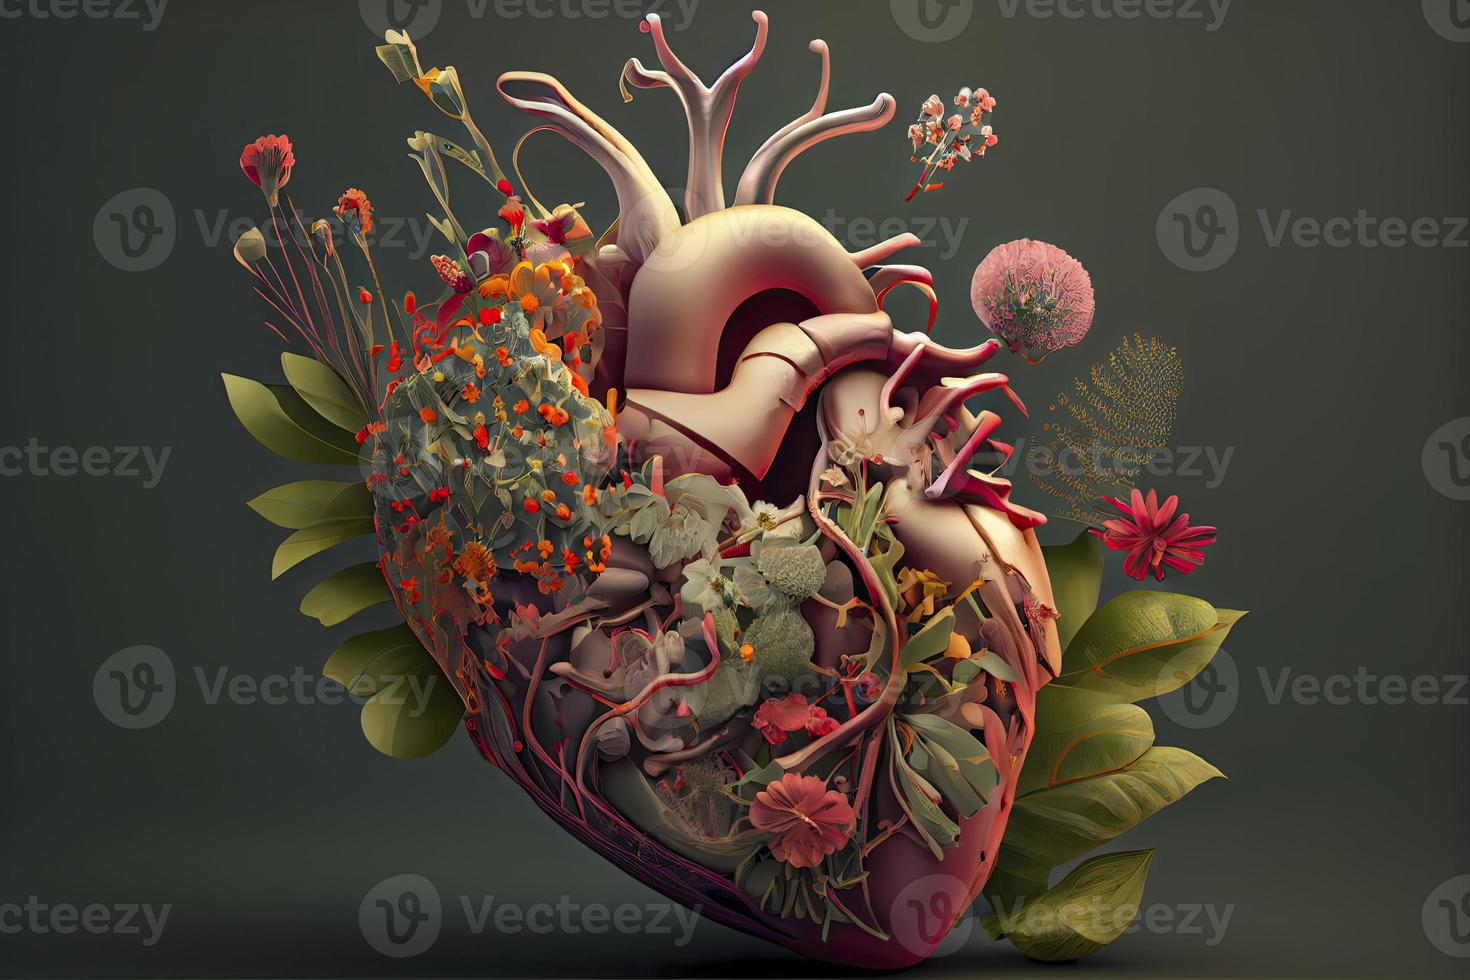 humano coração com flores, amor e emoção conceito foto